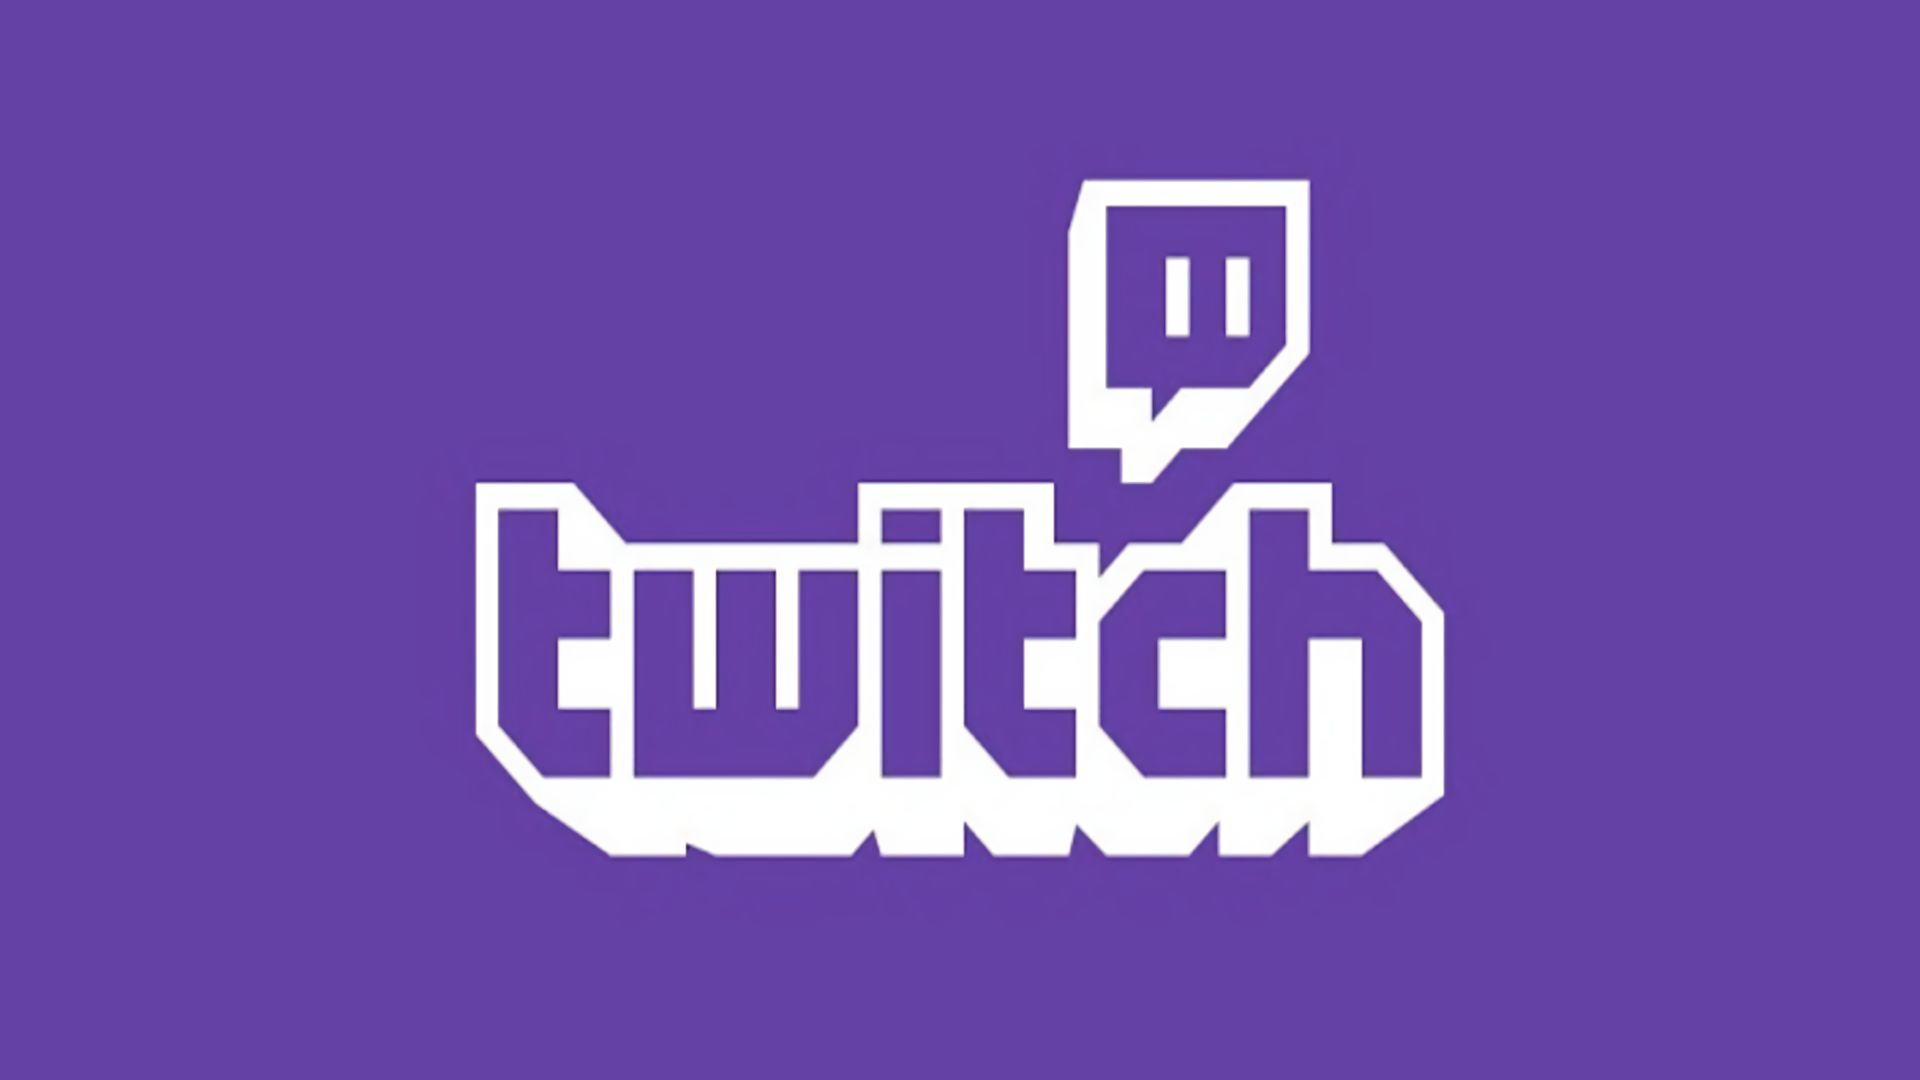 Twitch 001 Logo